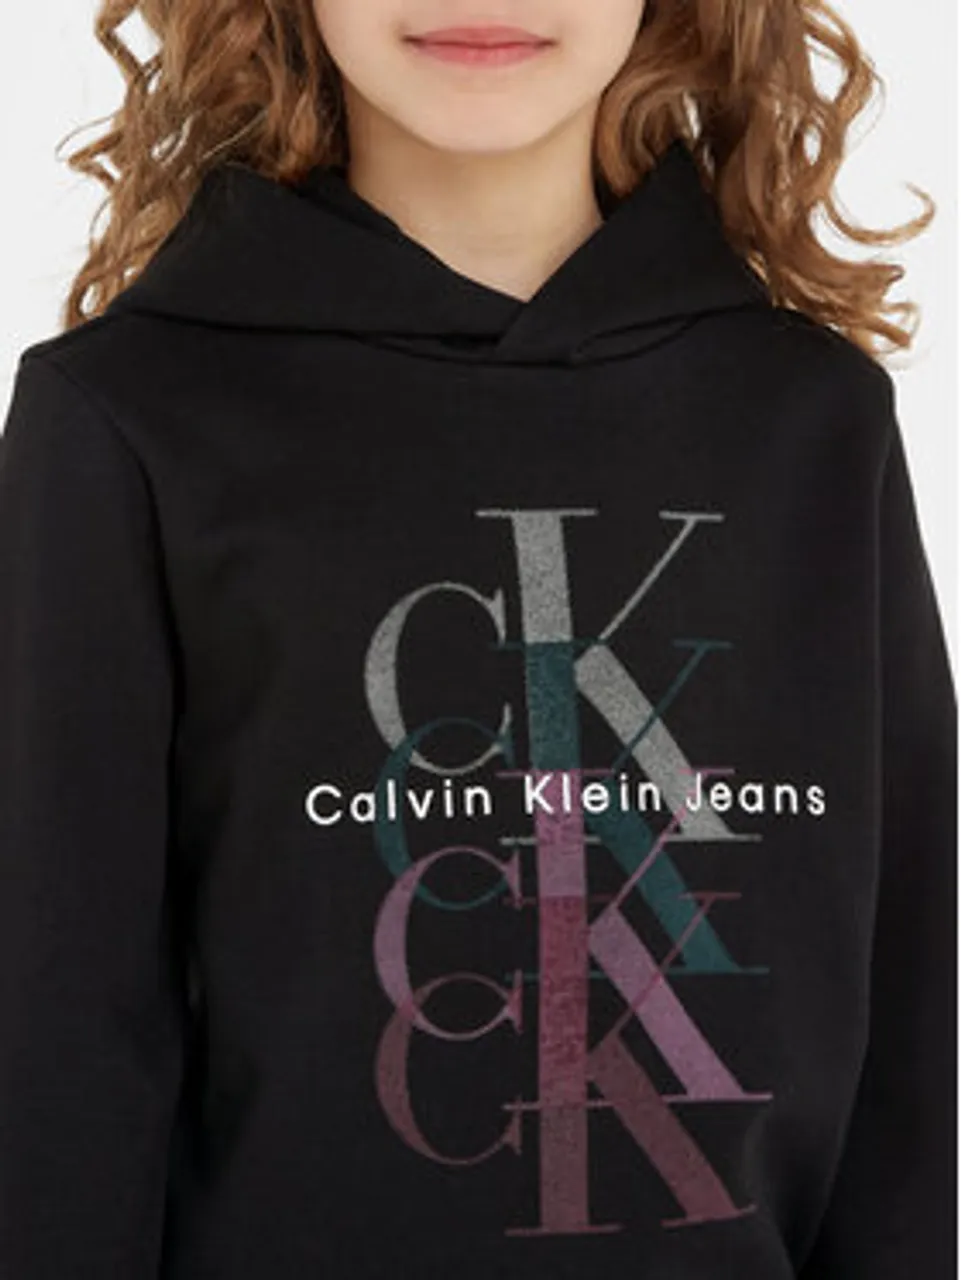 Calvin Klein Jeans Sweatshirt Monogram Repeat IG0IG02211 Schwarz Regular Fit